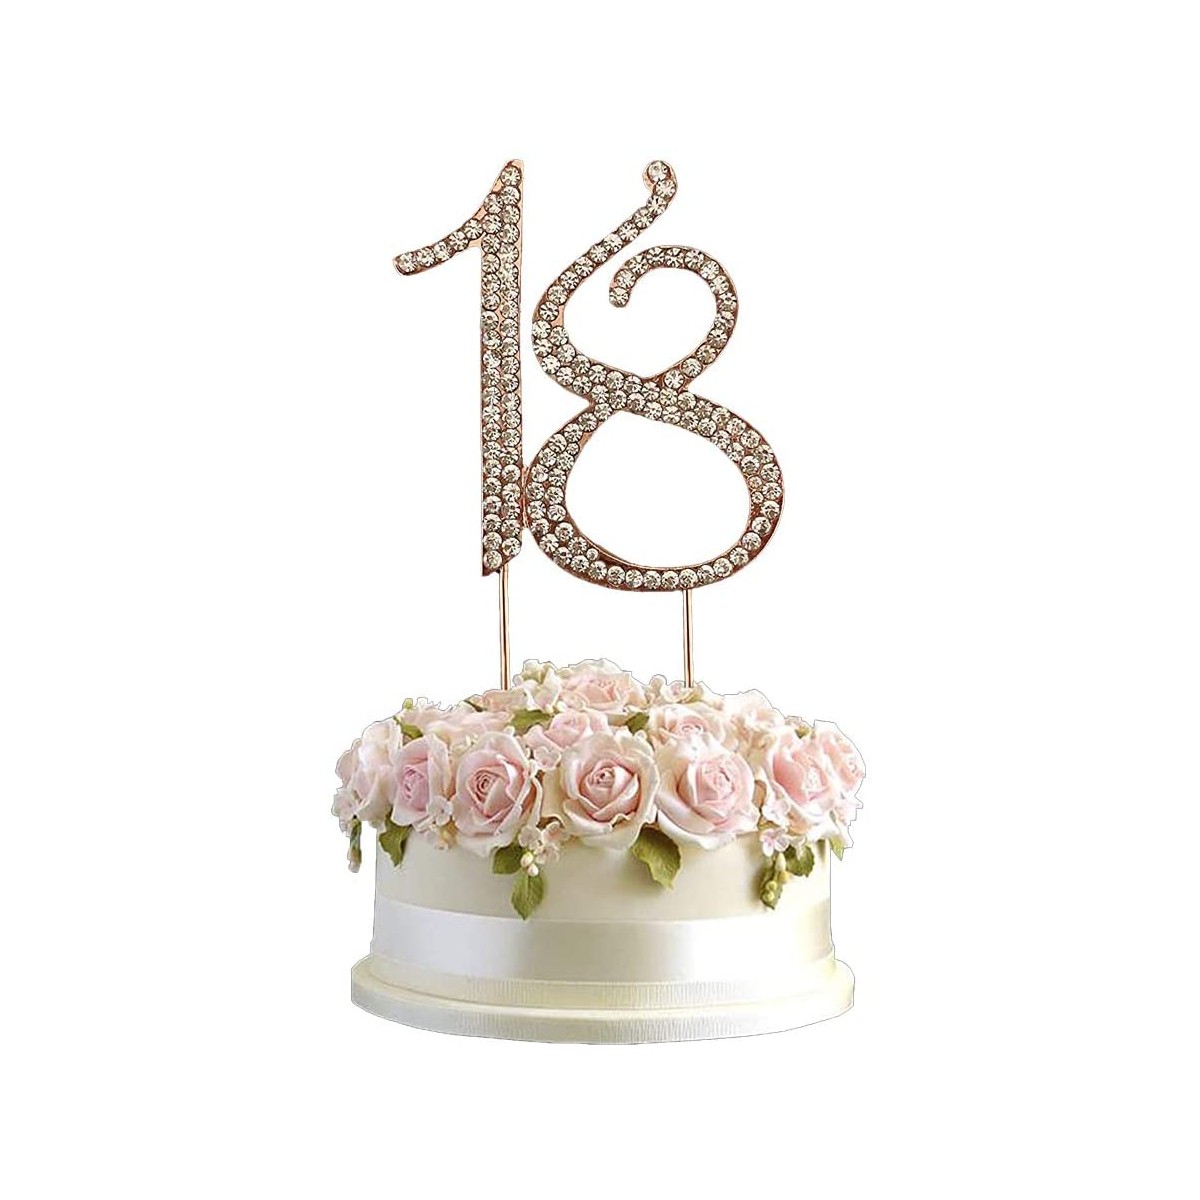 Happy Birthday Cake Topper 18 anni Blu,Amore Decorazione per Torta Compleanno per Compleanno 18 anni Con Palloncino A Forma Di Stella A Cuore Glitterato per Decorazioni Torta Compleanno per Ragazzo 